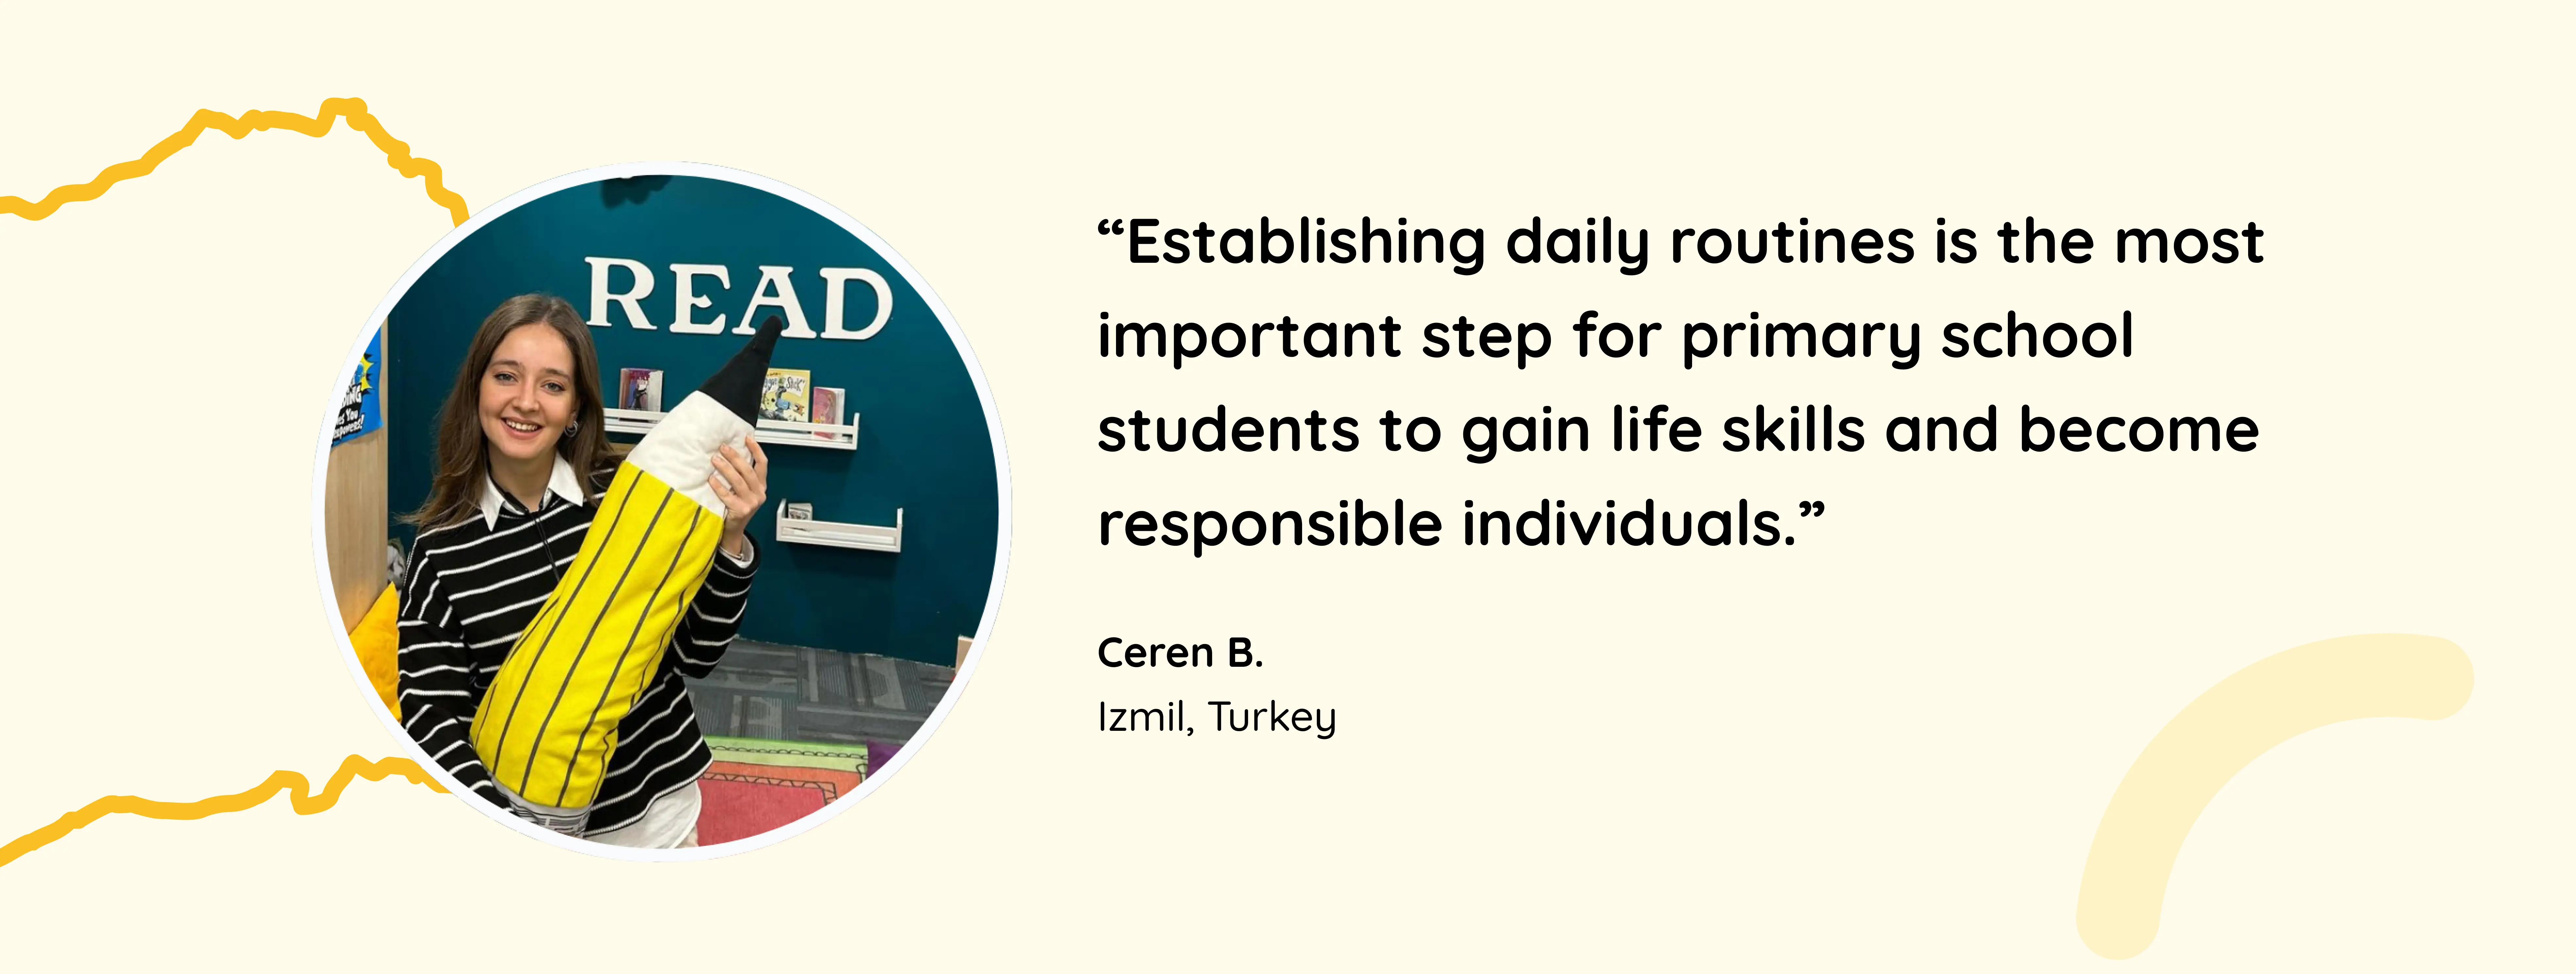 Meet Ceren, a Grade 1 teacher from Turkey